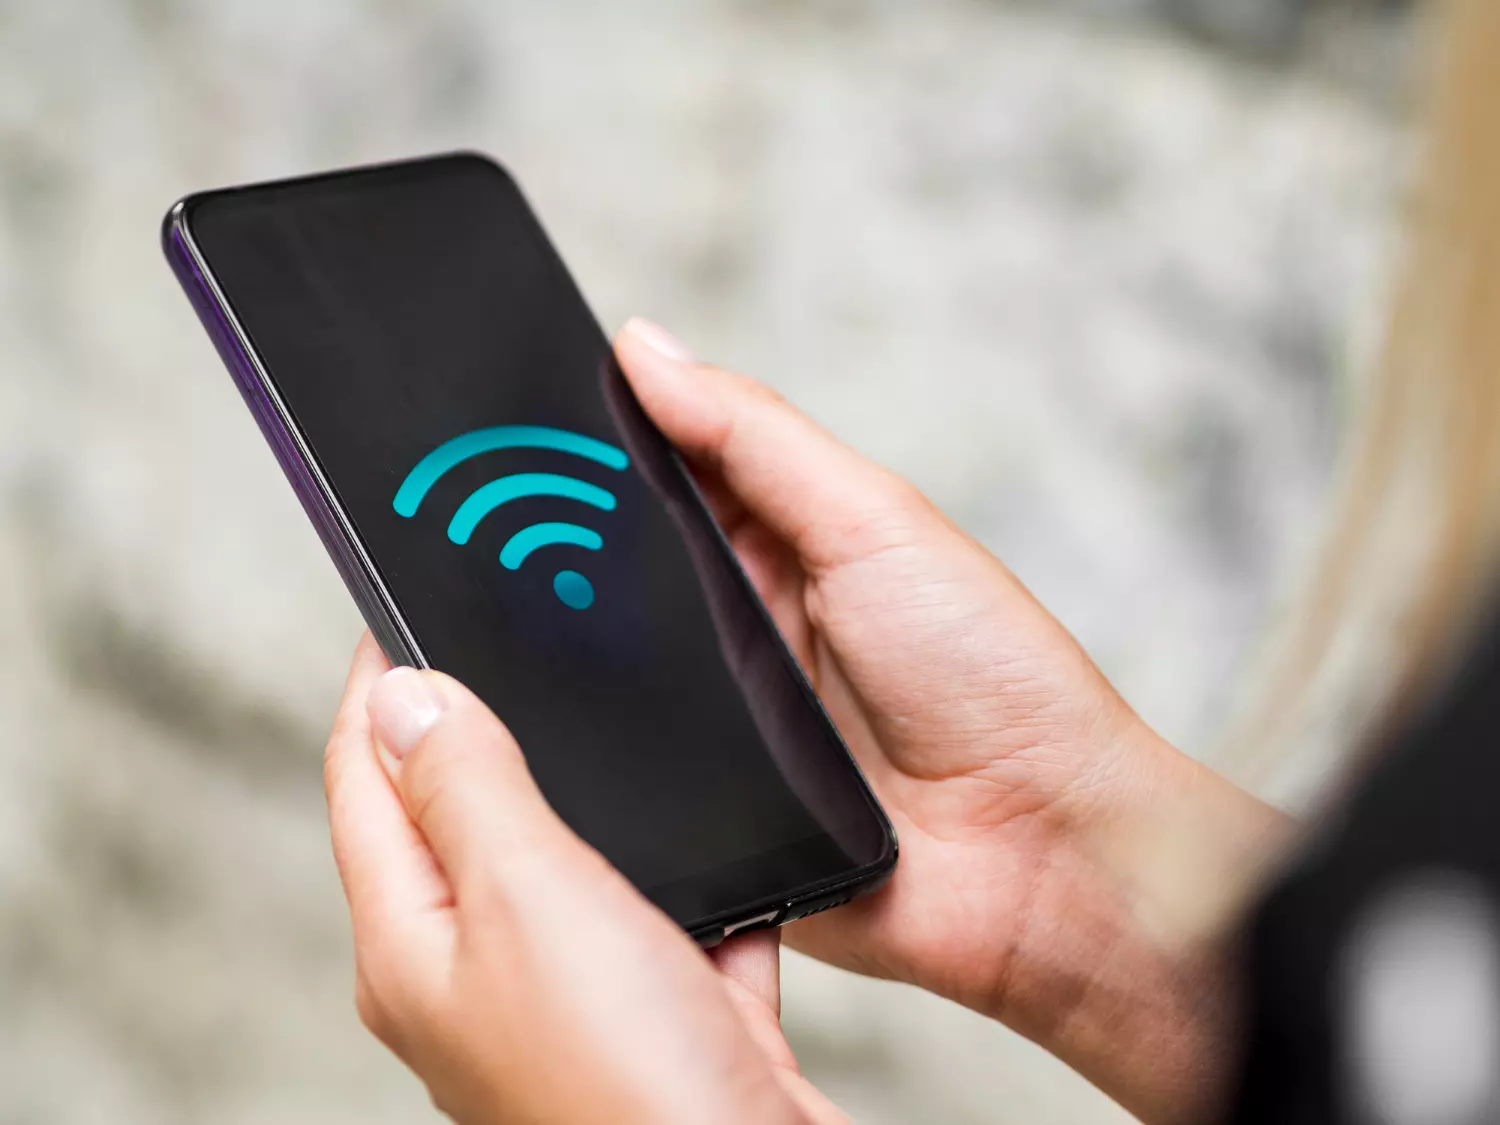 Celular não conecta no Wi-Fi? Veja algumas dicas que podem lhe ajudar!